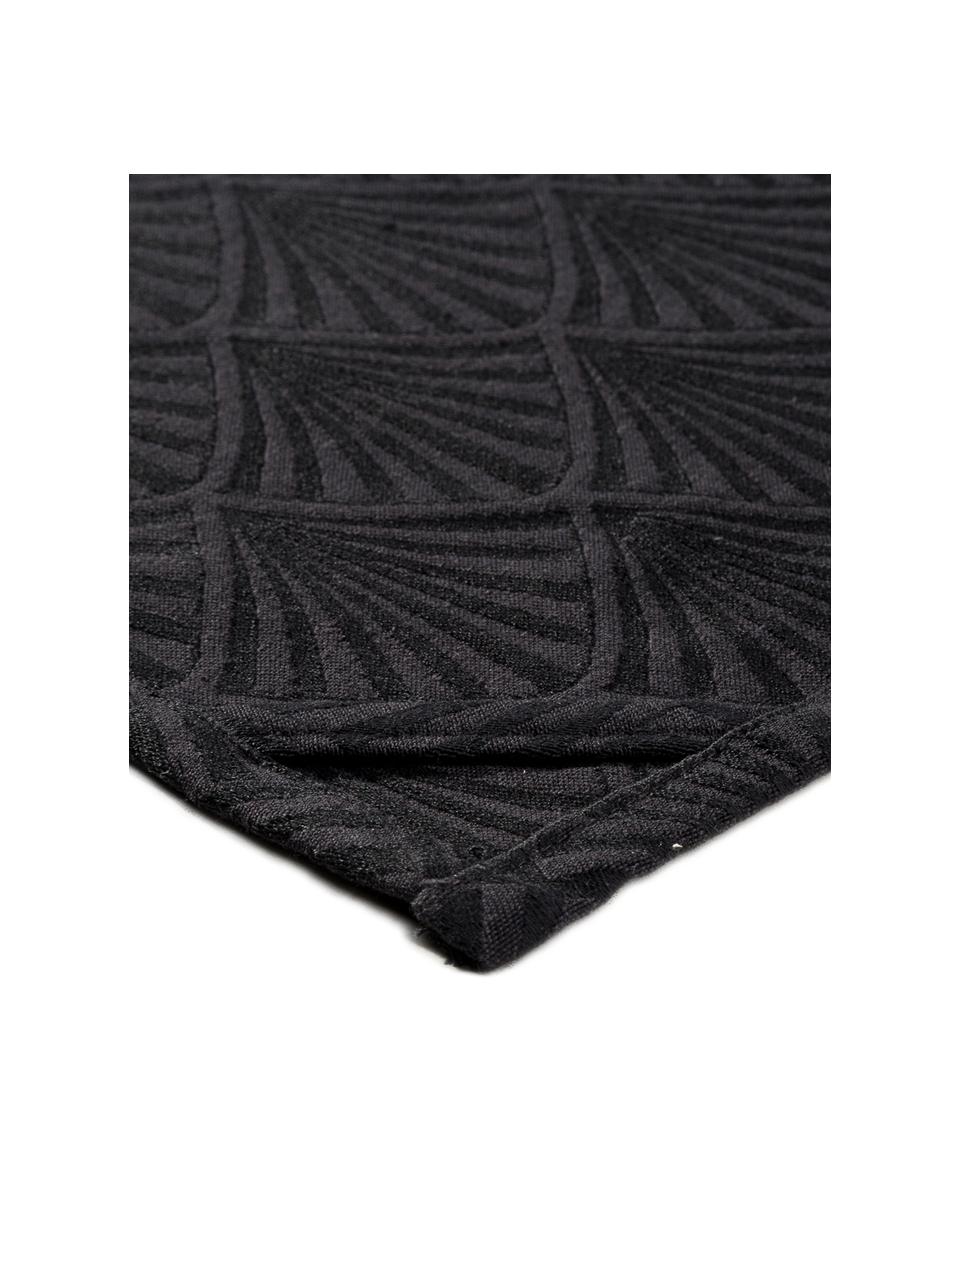 Canovaccio in nero lucido Celine, Tessuto: Jacquard, Nero, Larg. 50 x Lung. 70 cm